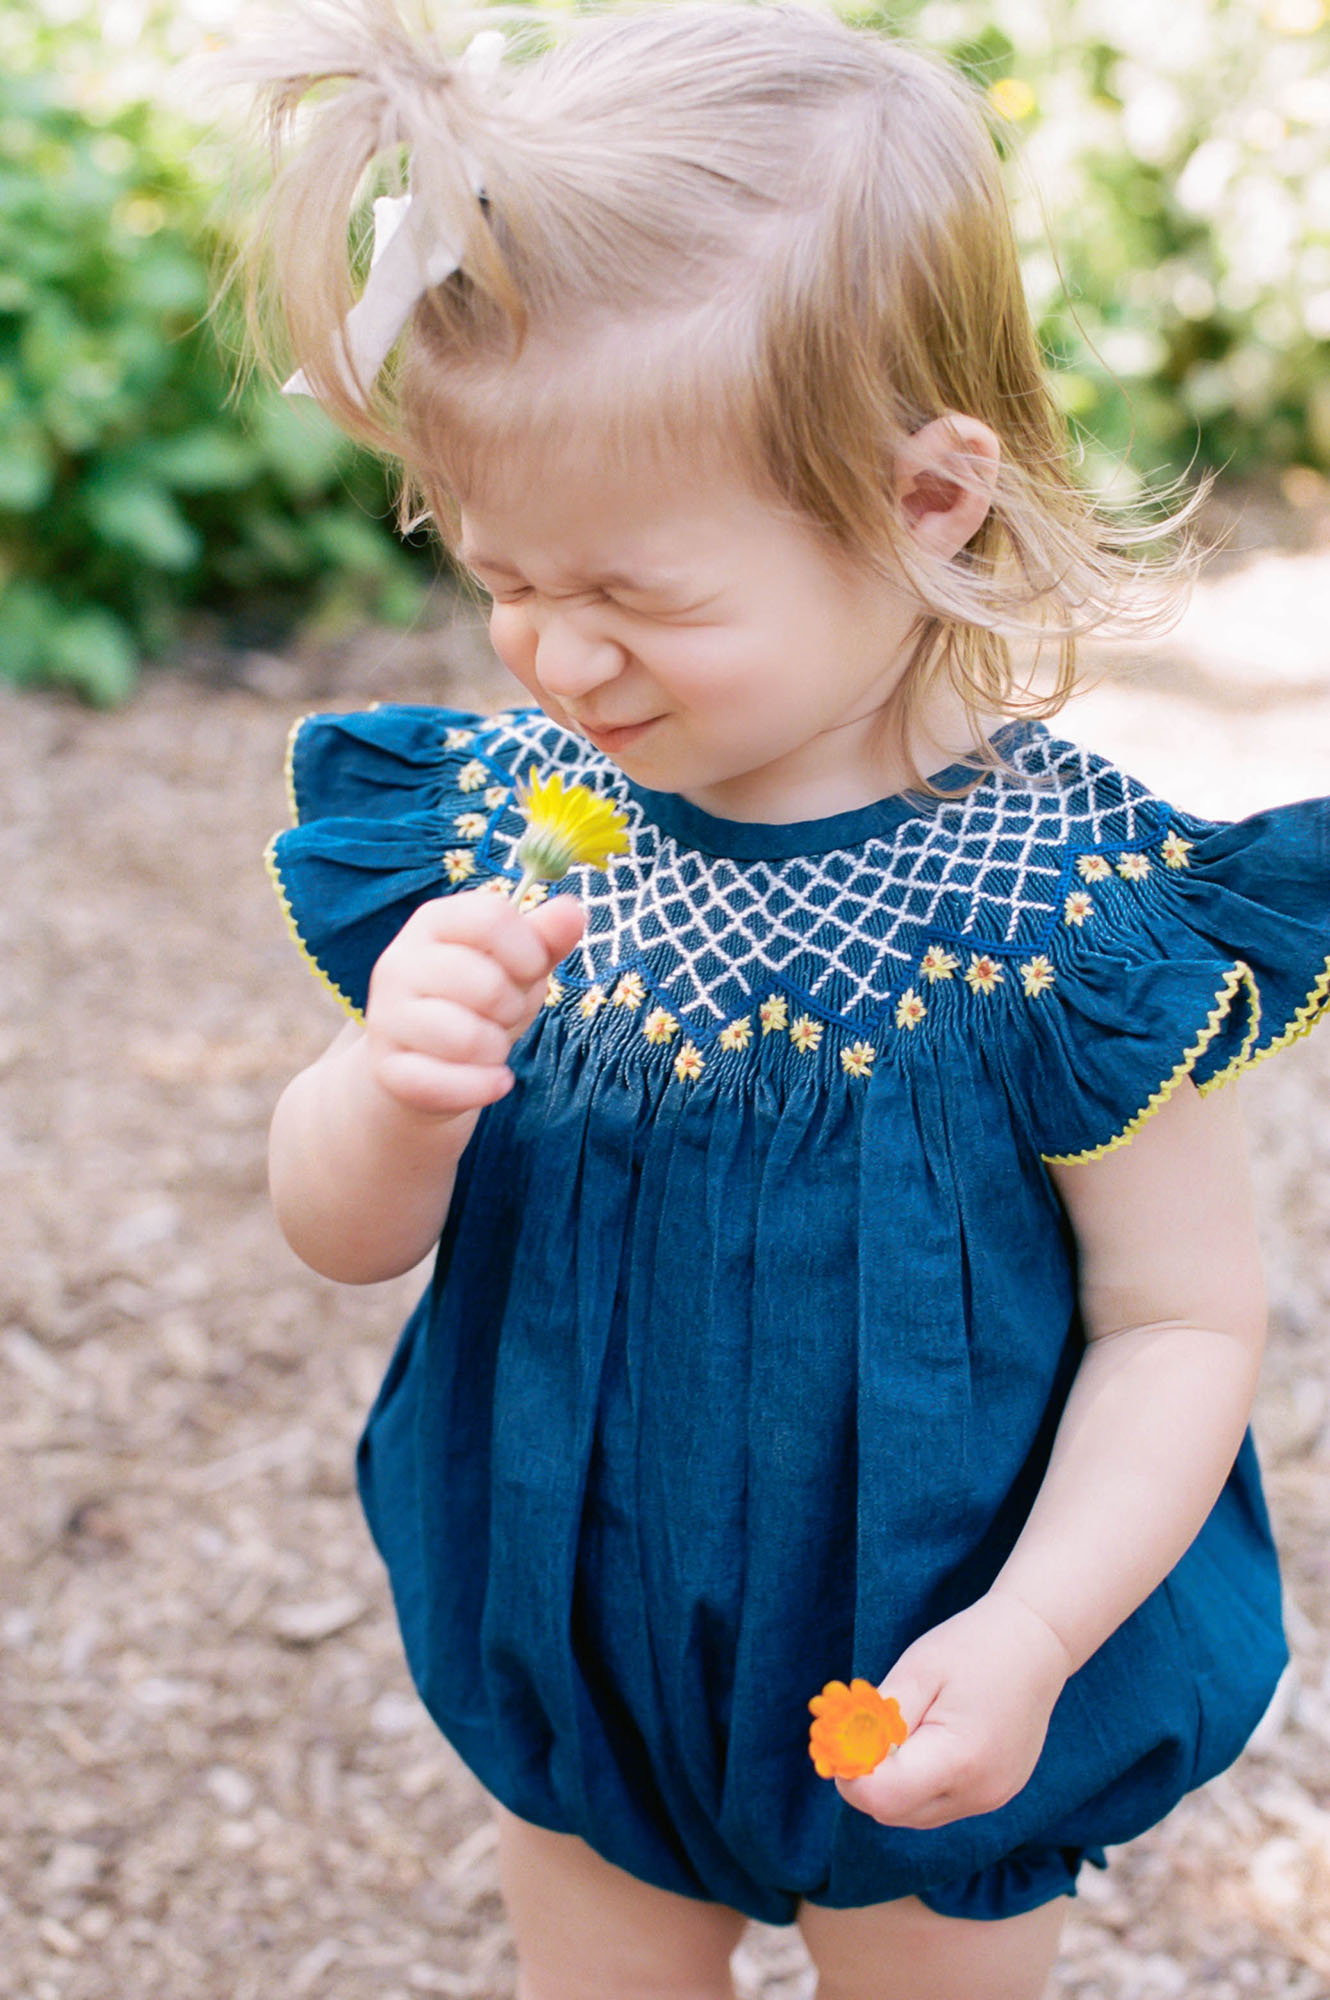 Portland-family-photographer-toddler girl in blue romper in garden